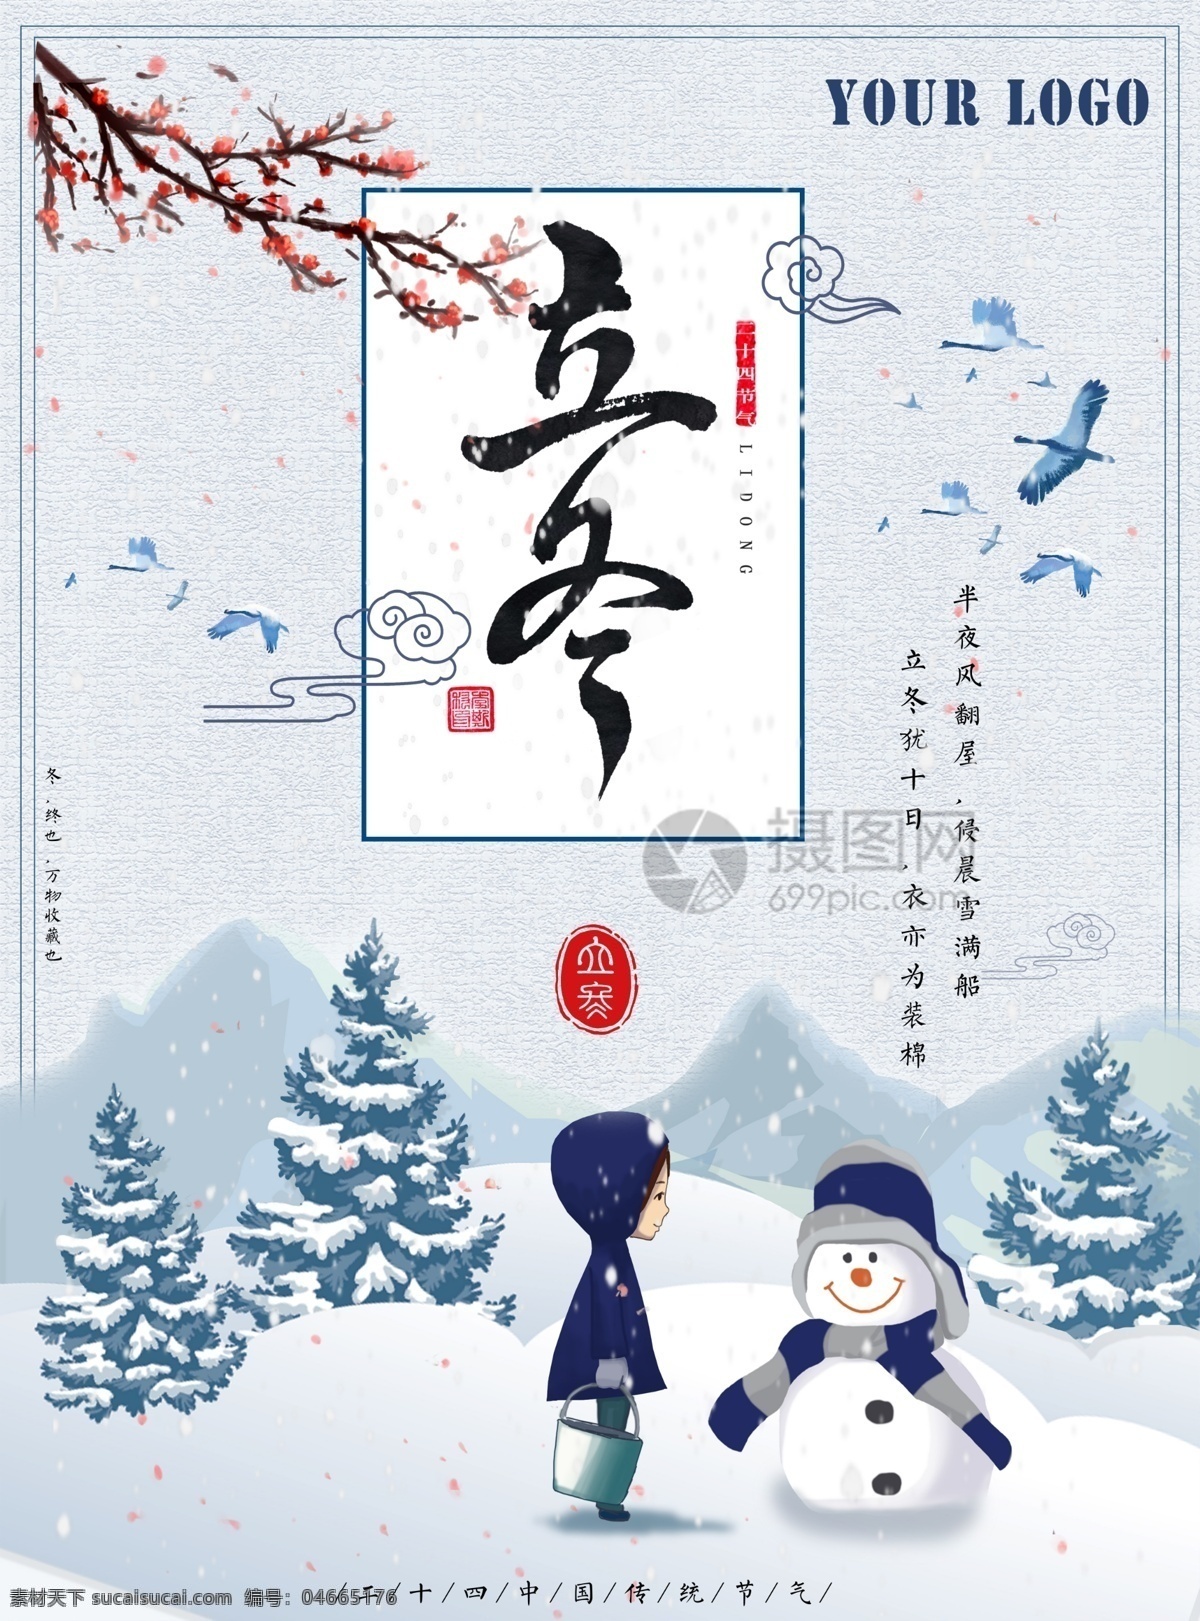 蓝色立冬海报 立冬 二十四节气 传统节气 雪地 雪人 传统节日 农历节日 海报